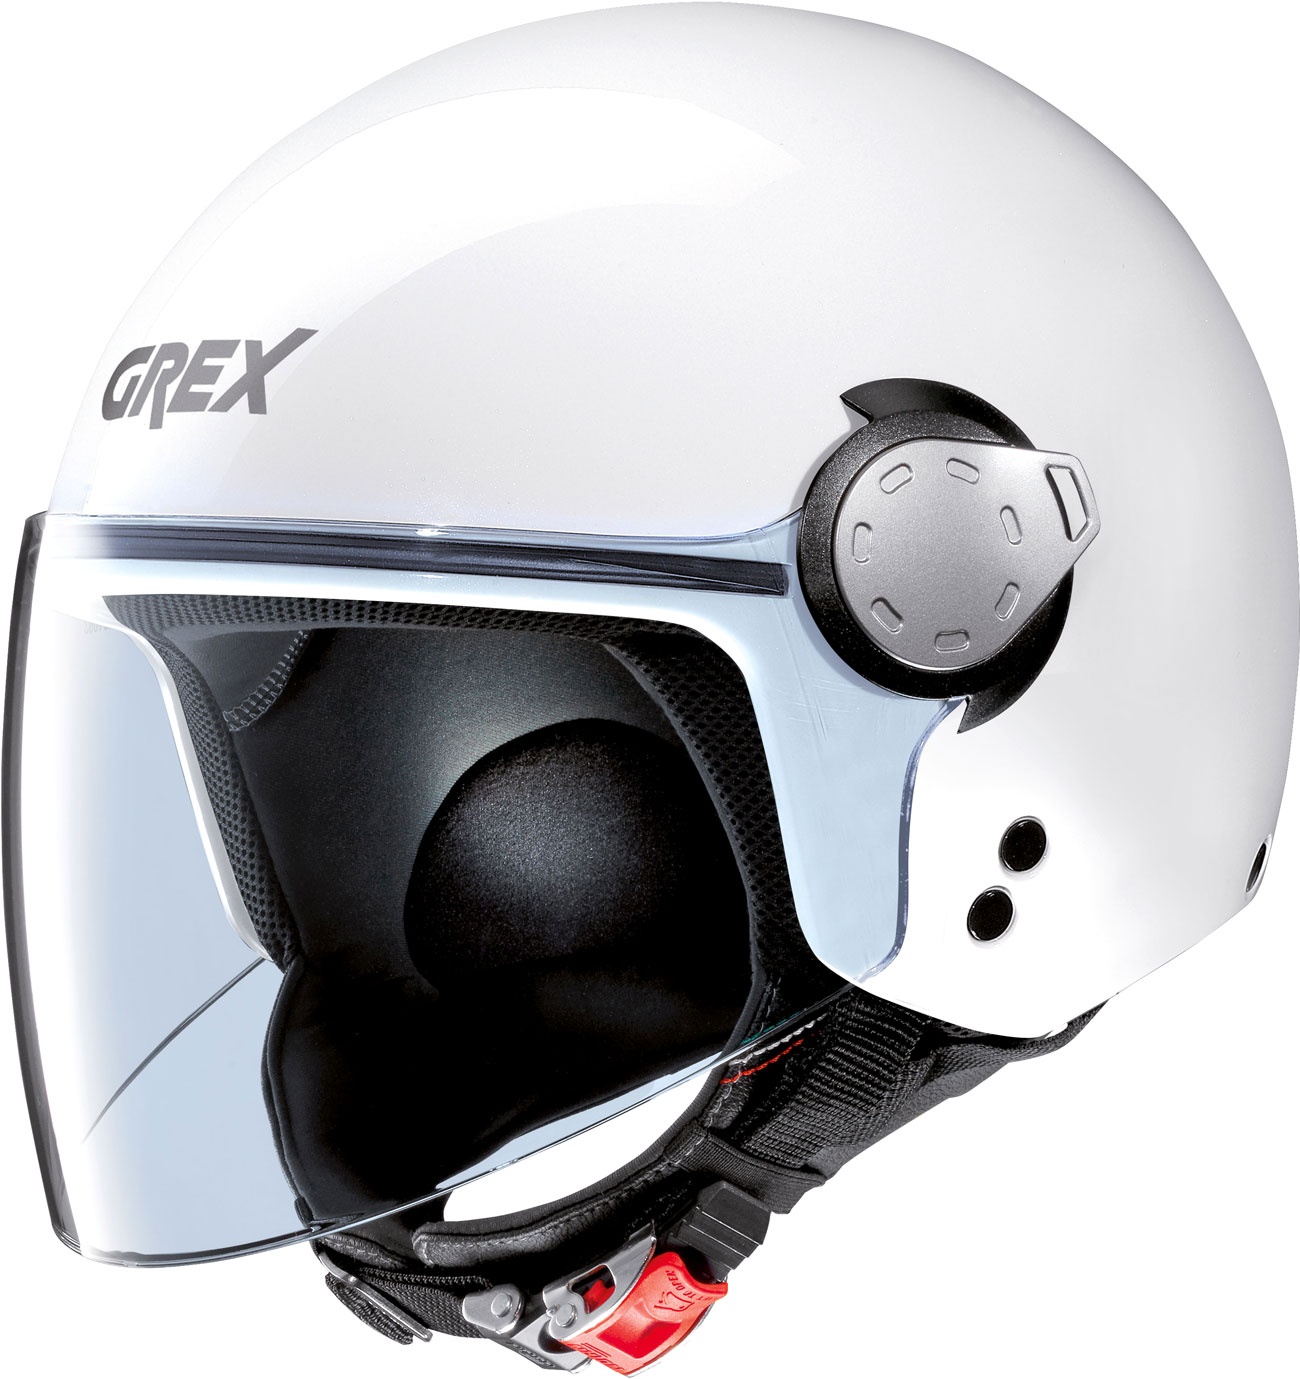 Grex G3.1 E Kinetic, casque de jet - Blanc - XL